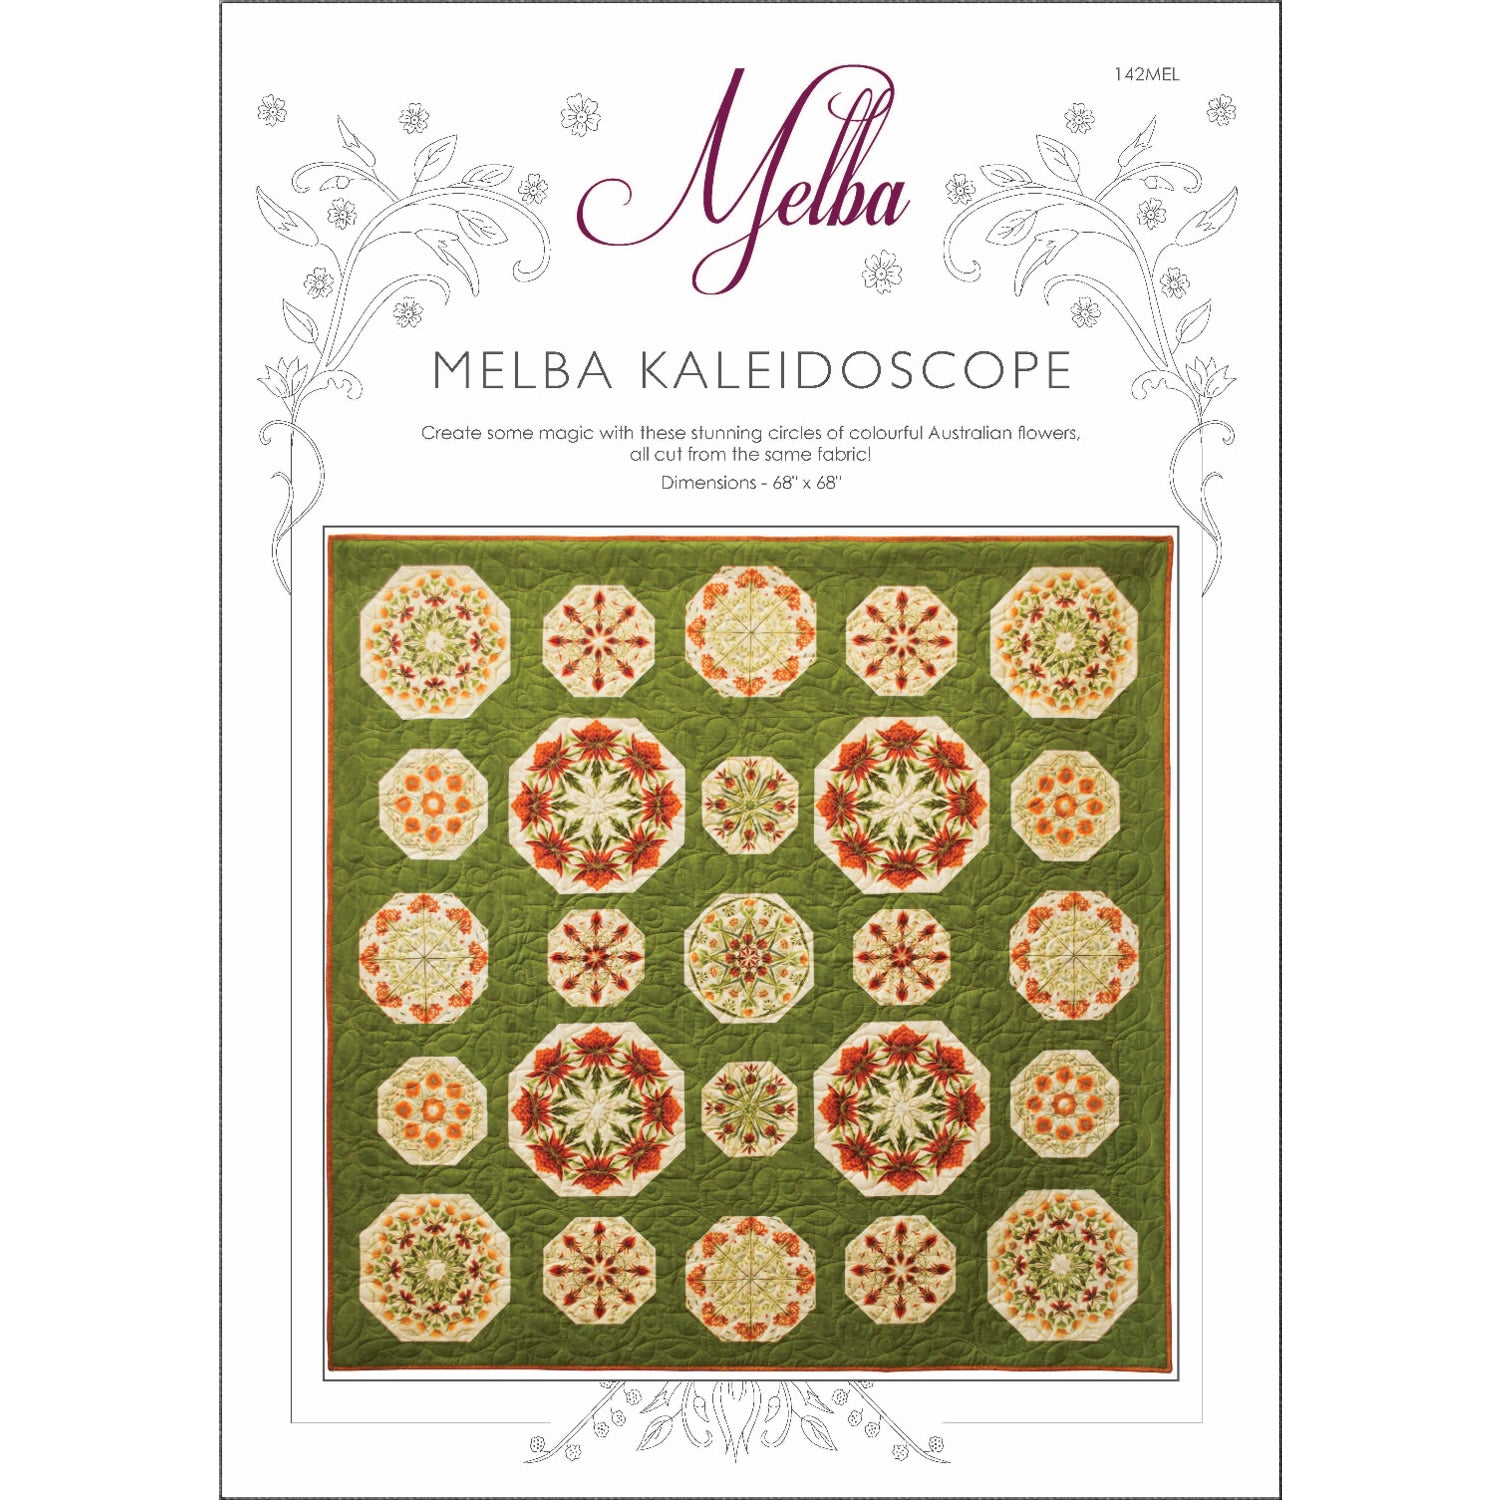 Melba Kaleidoscope - 142MEL